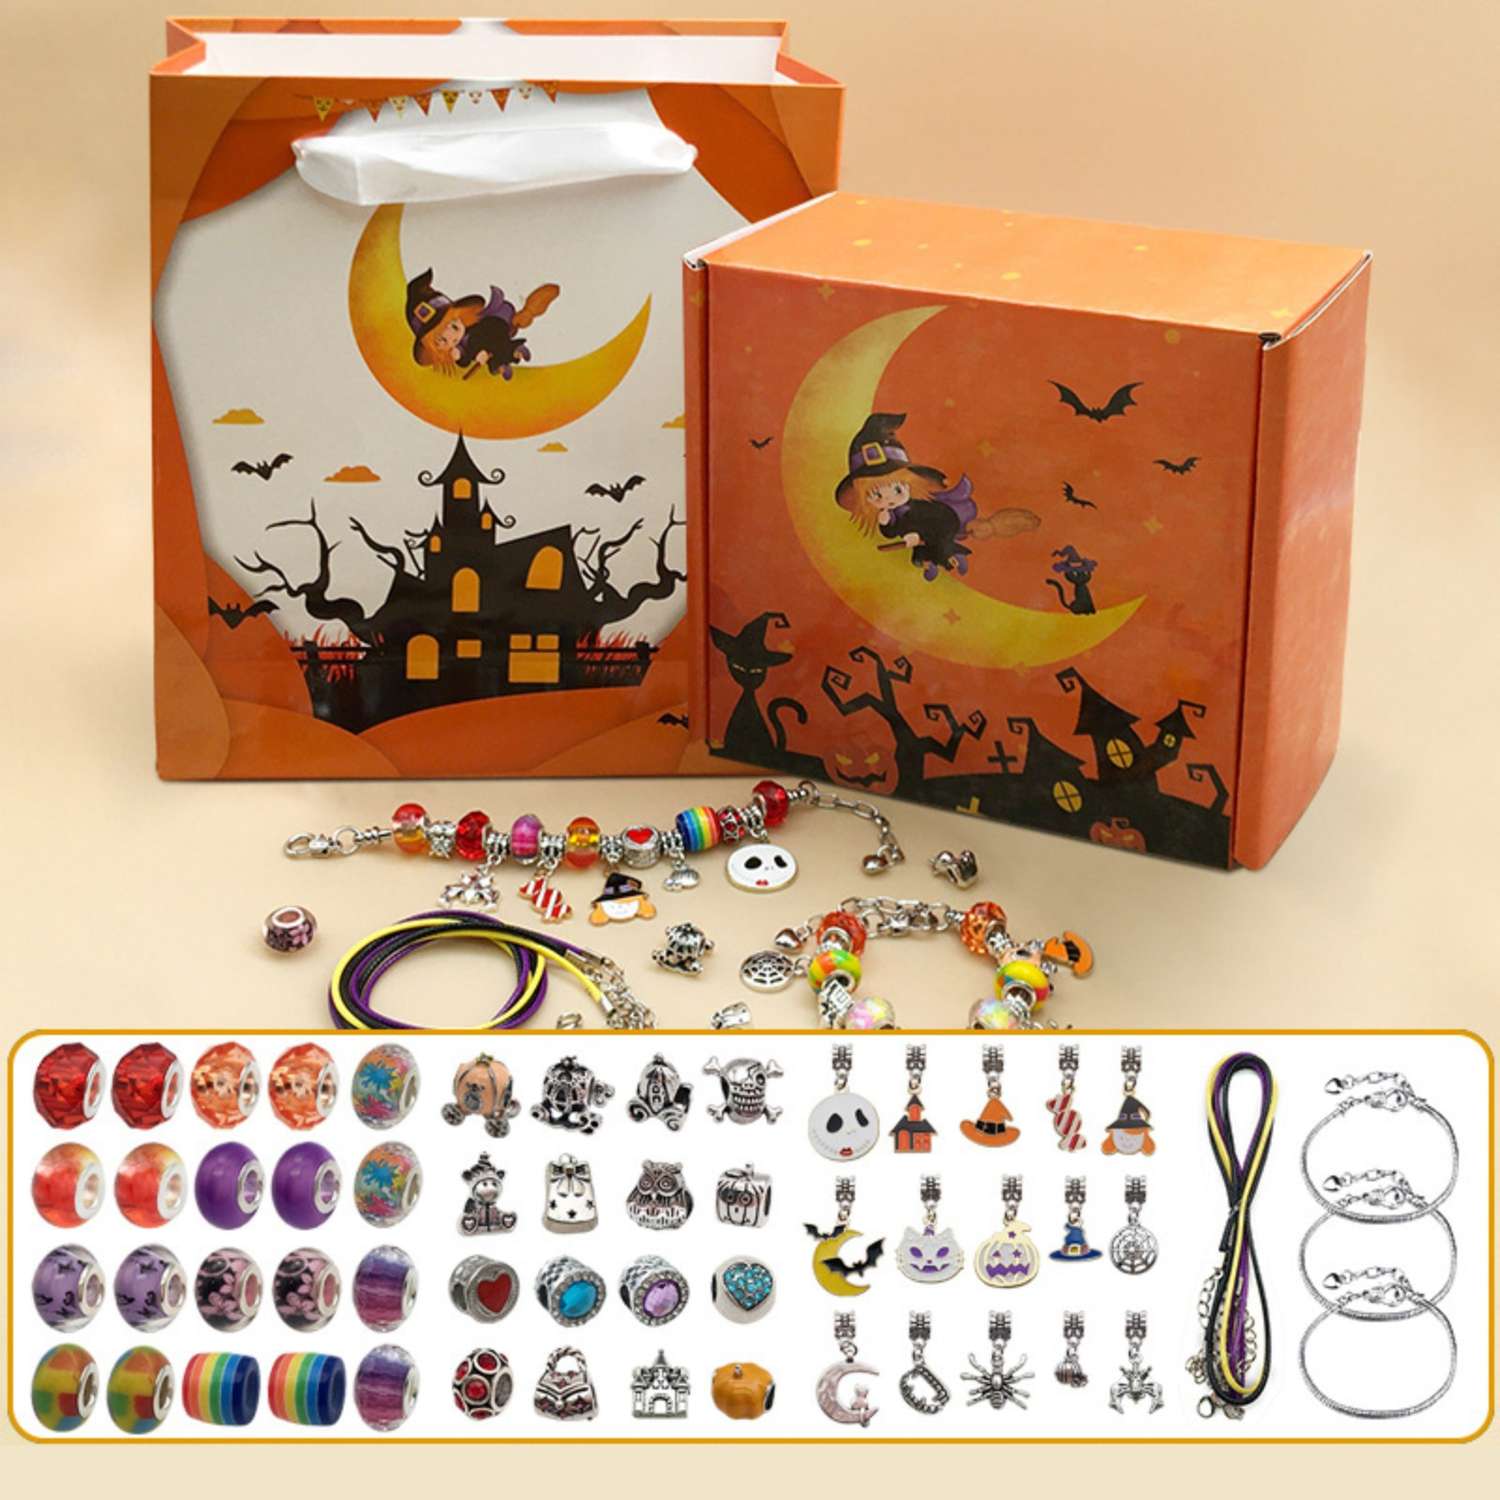 Набор Queen fair для создания браслетов «Подарок для девочек» хэллоуин 57 предметов цветной - фото 2